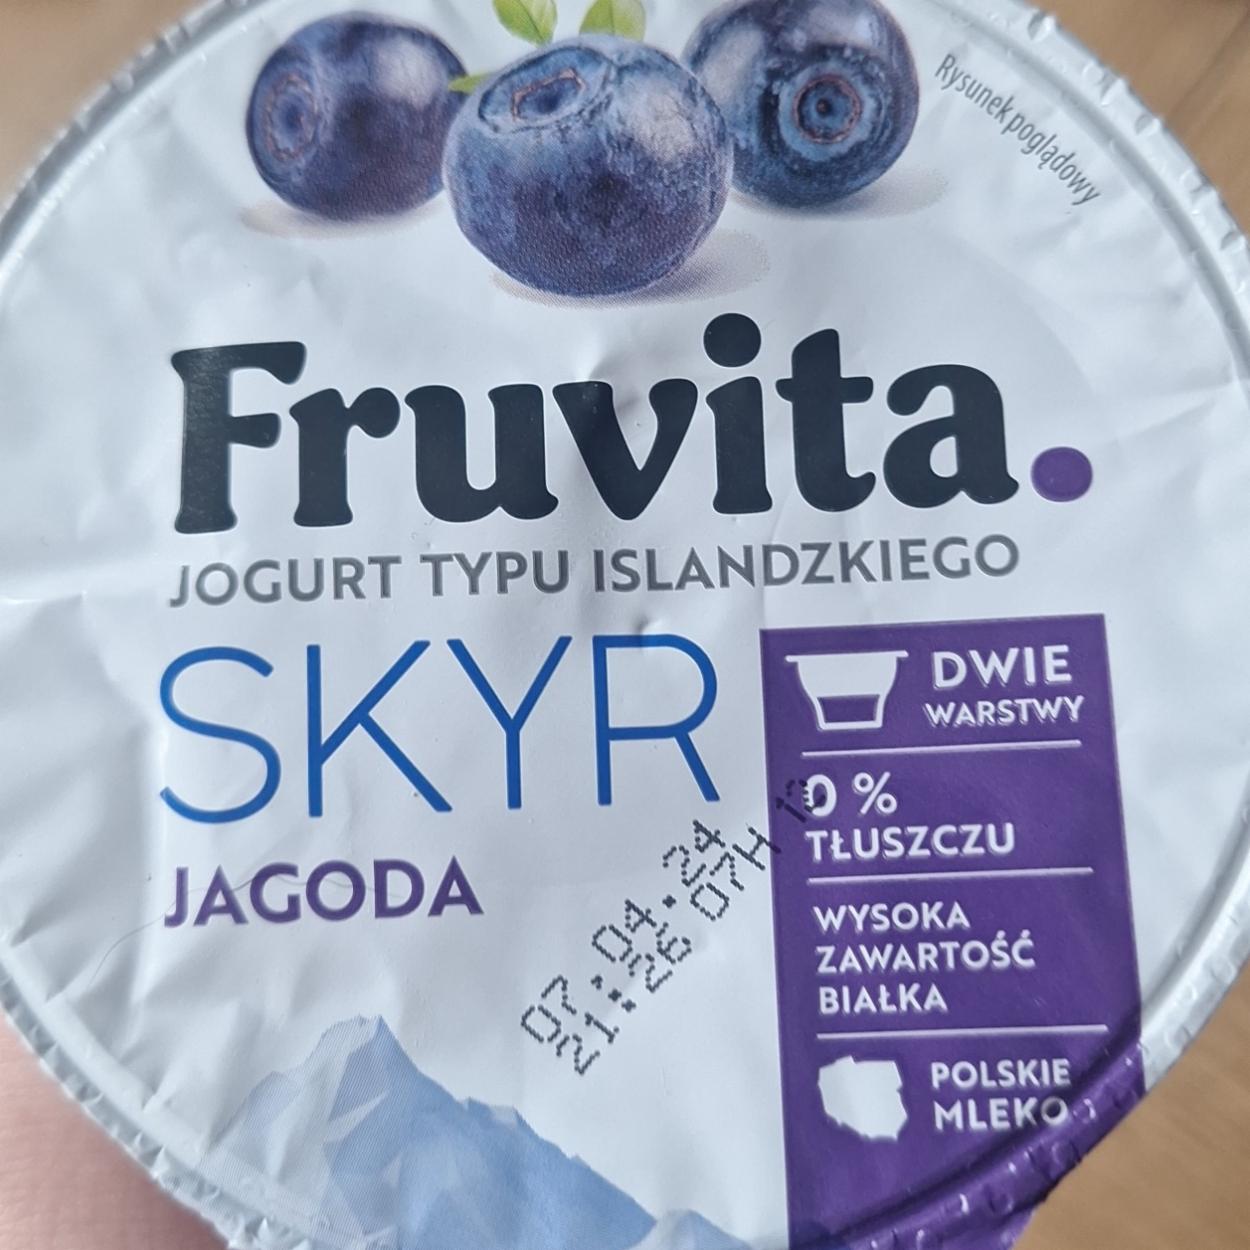 Zdjęcia - Jogurt typu islandzkiego skyr jagoda dwie warstwy Fruvita